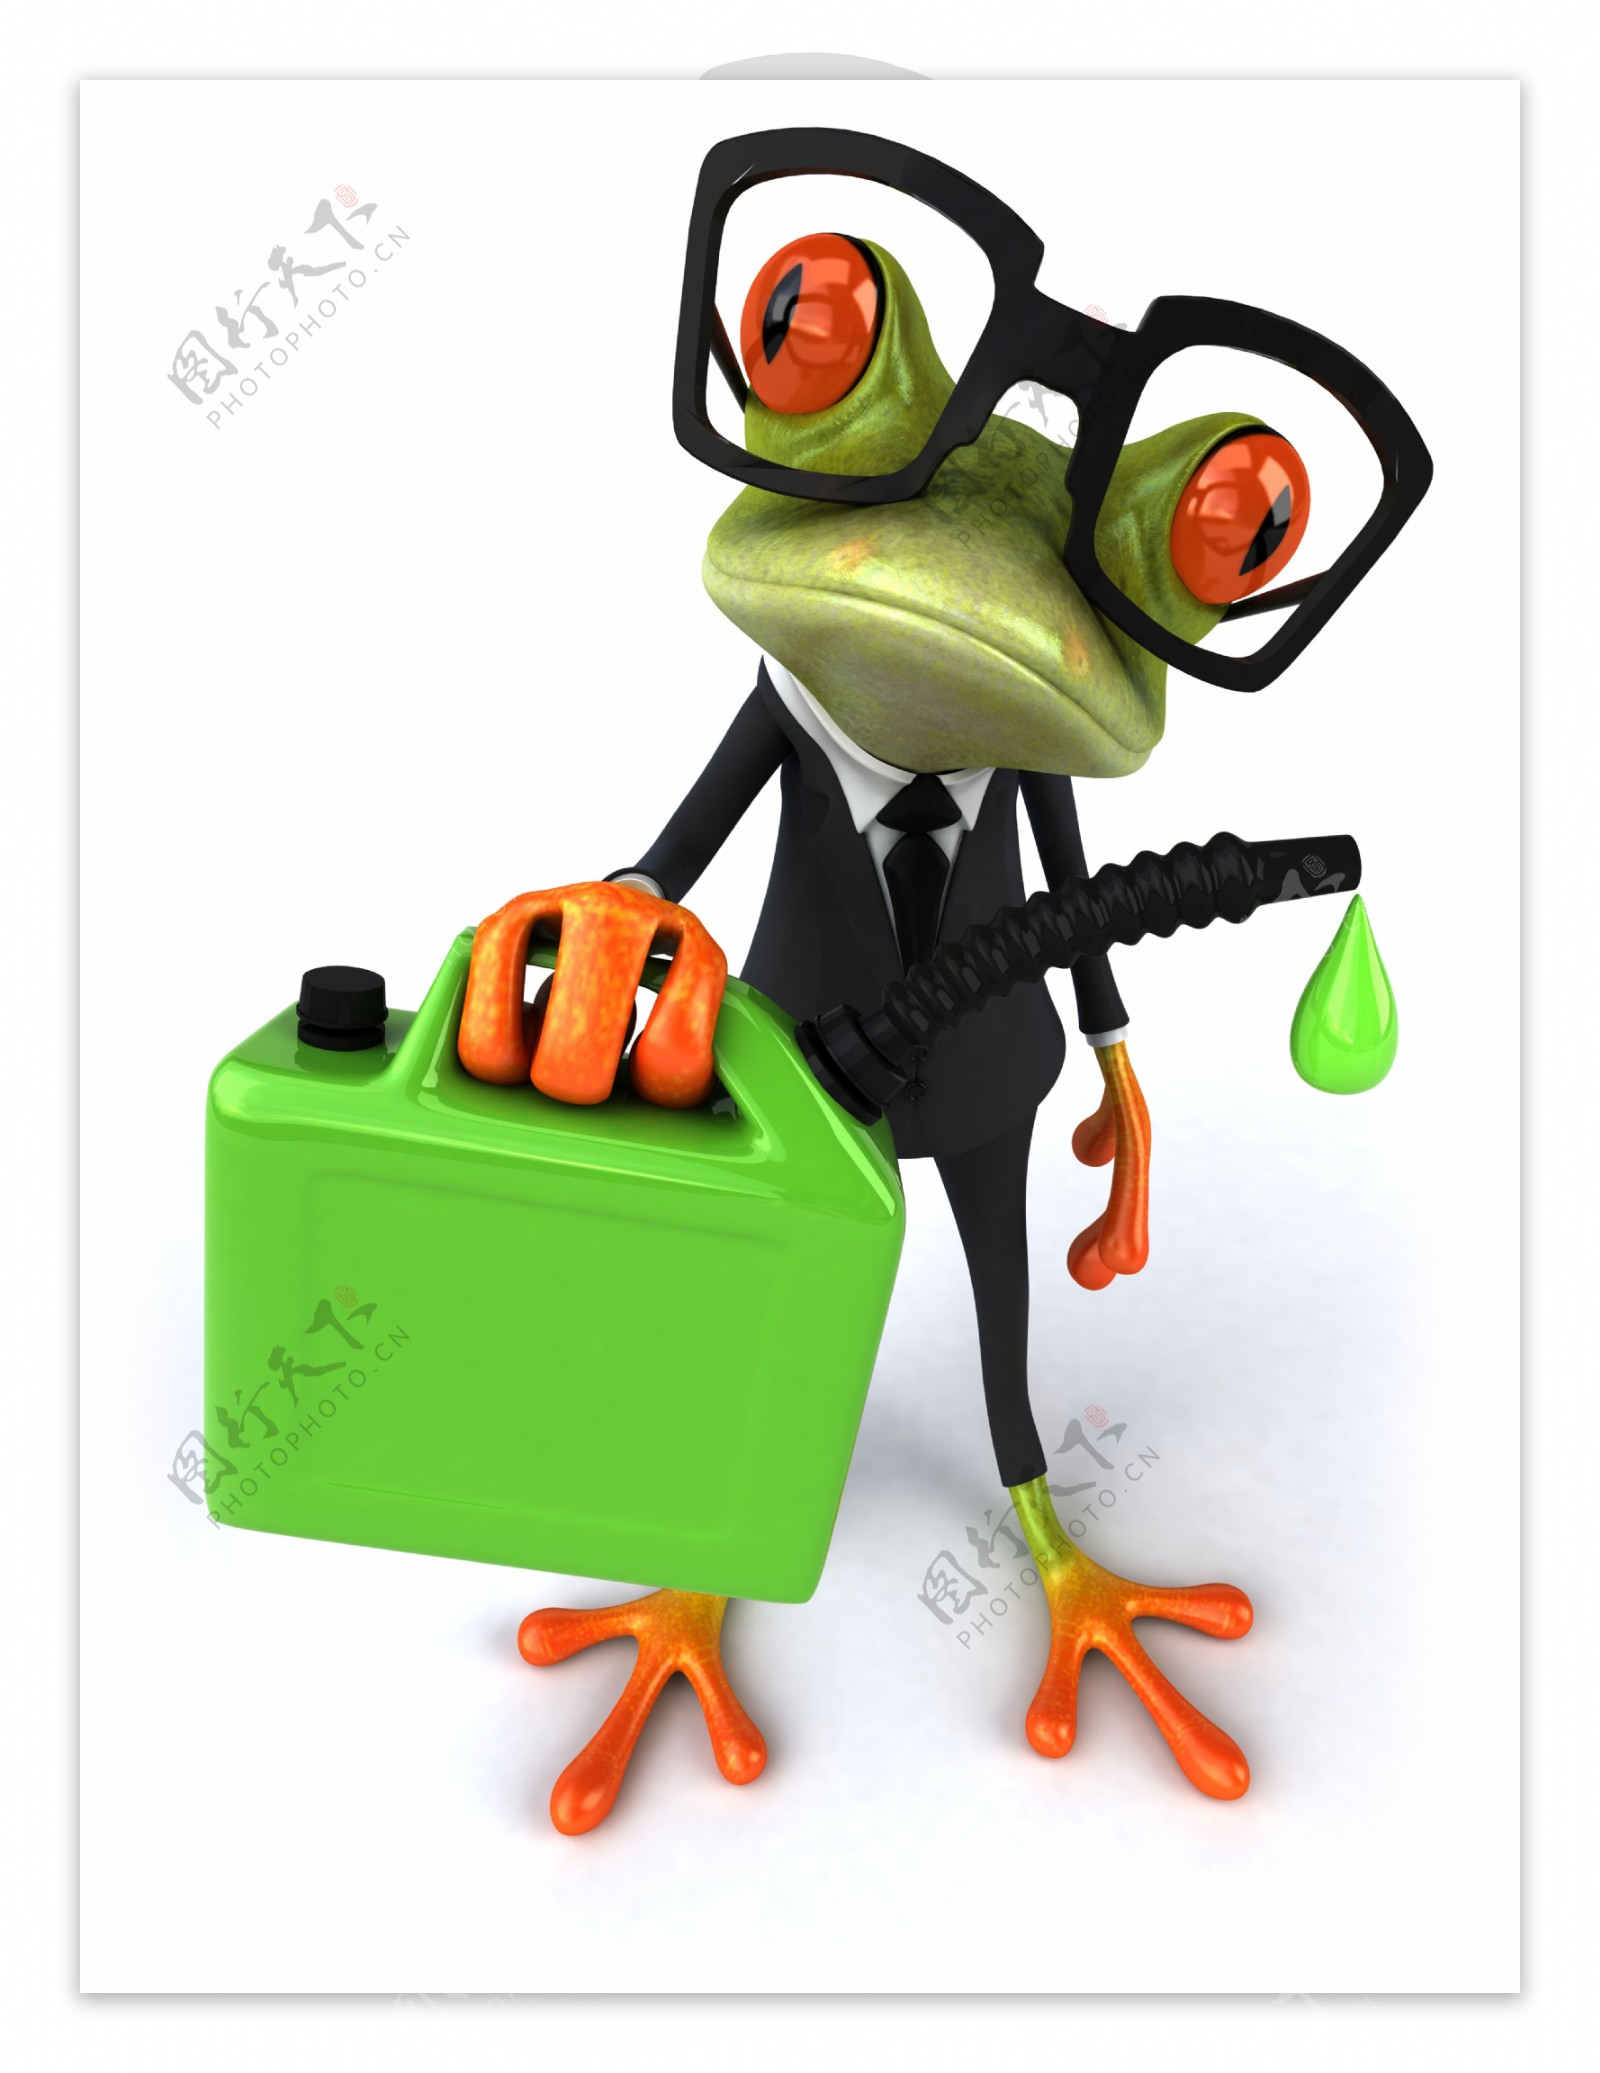 提着油桶的职业青蛙图片